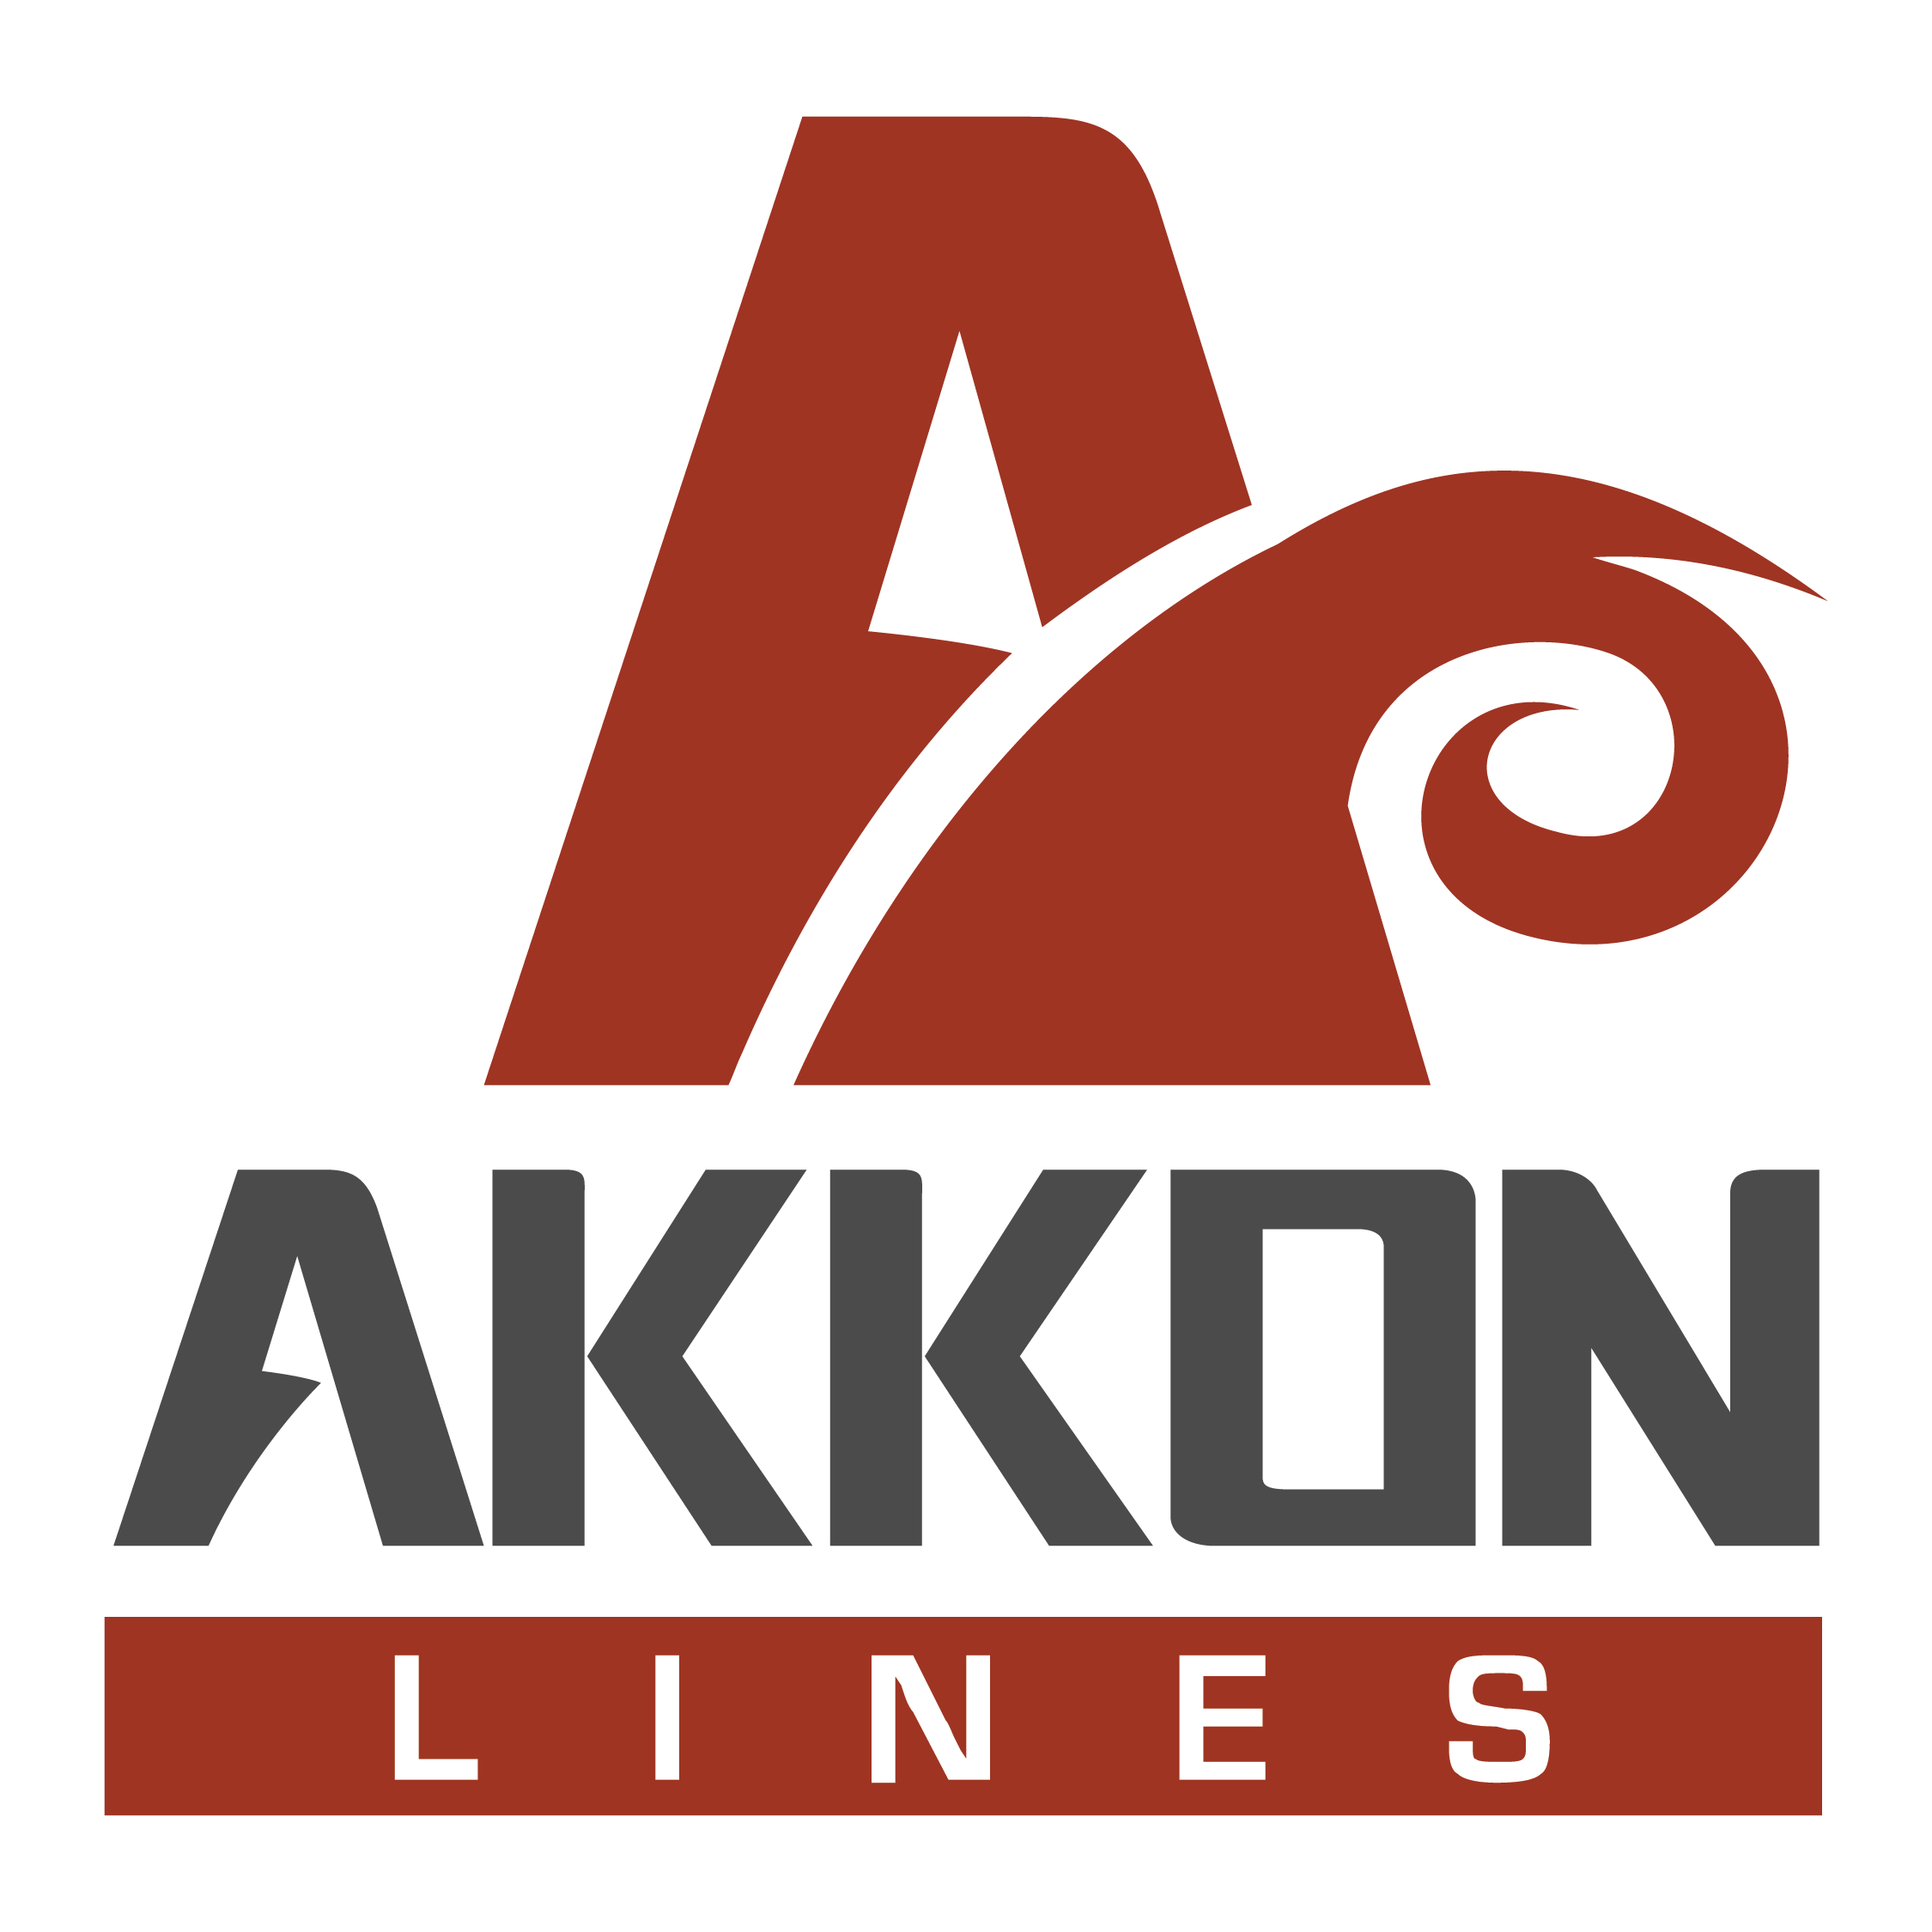 AKKON LINES